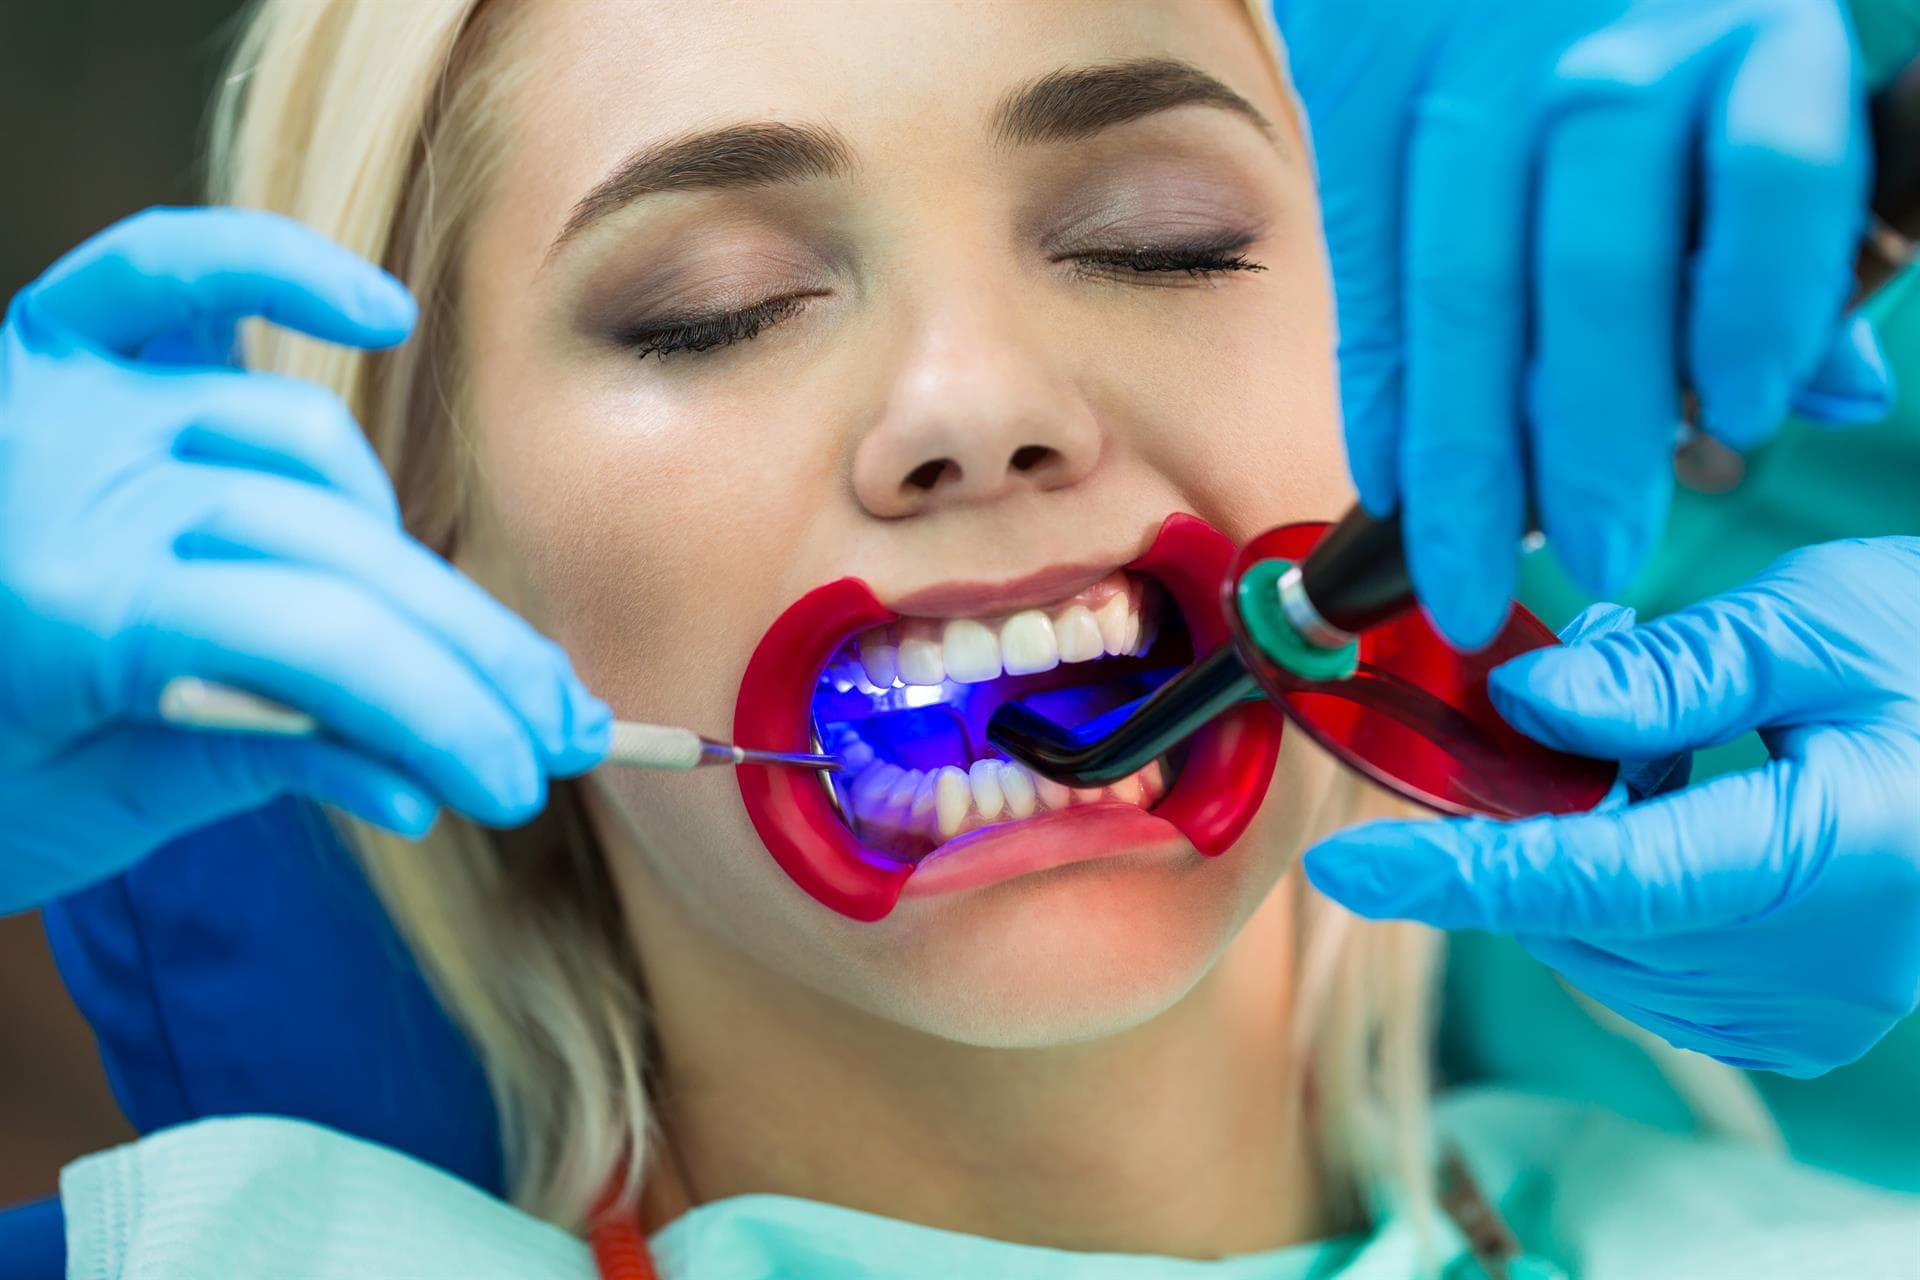 Centro Odontológico Dentine - Otros tratamientos de estética dental